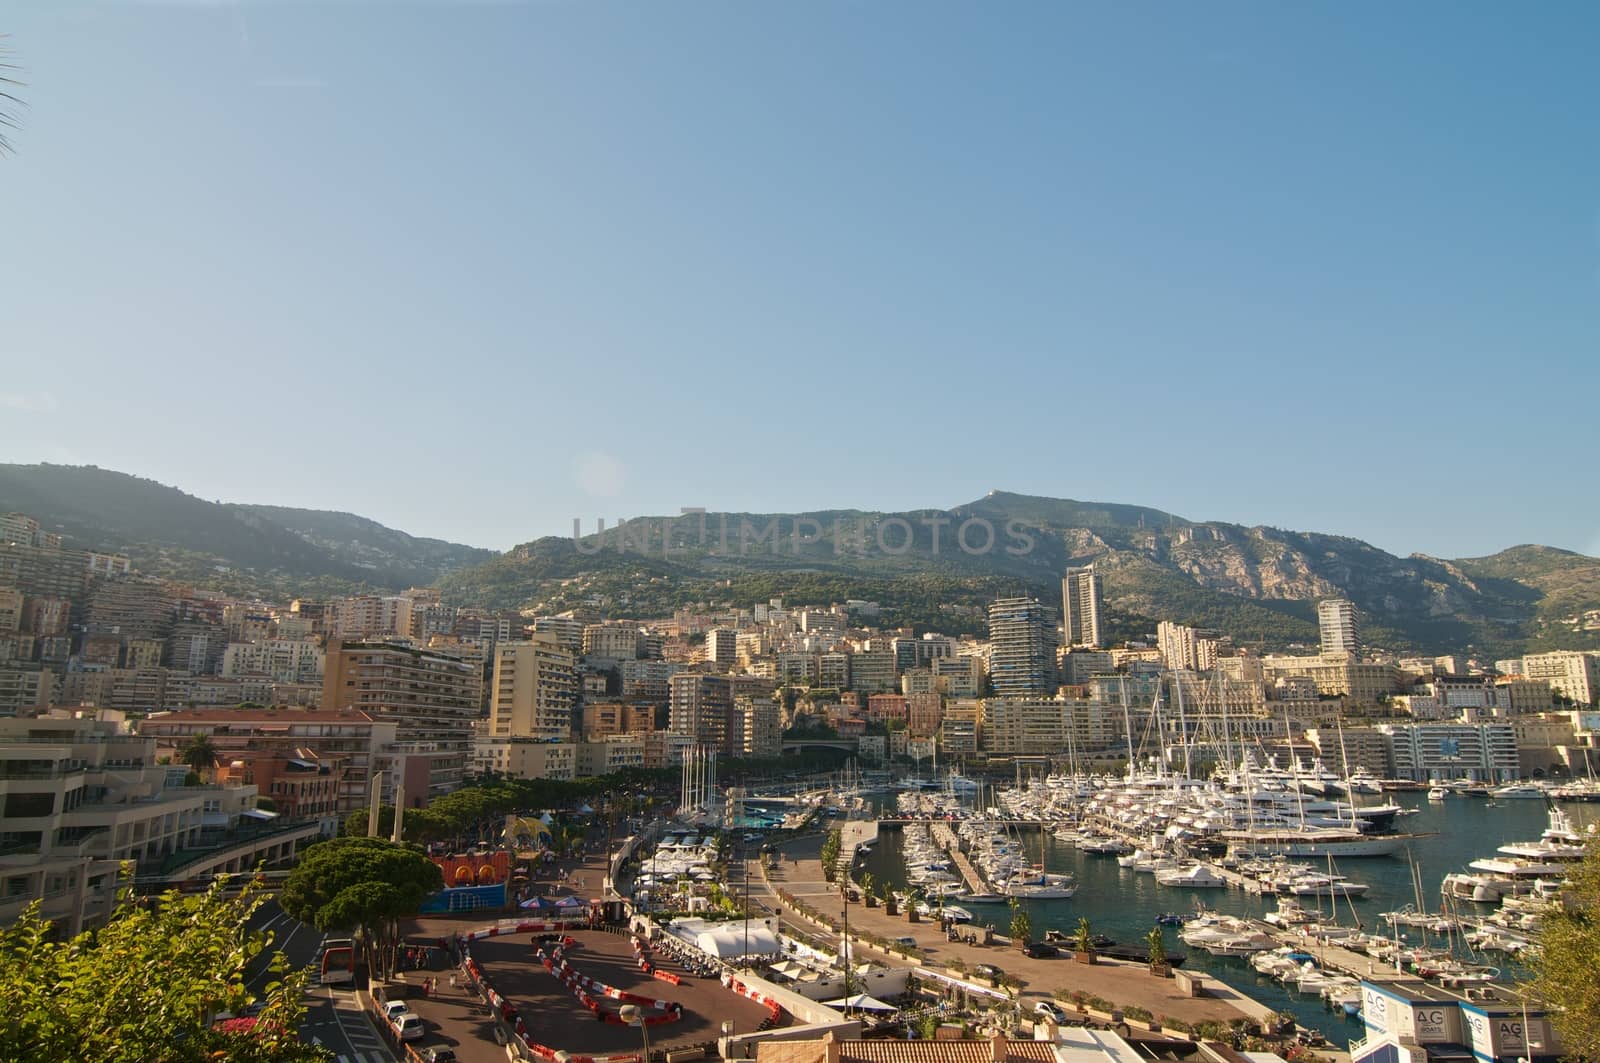 quay Monaco by dyvan